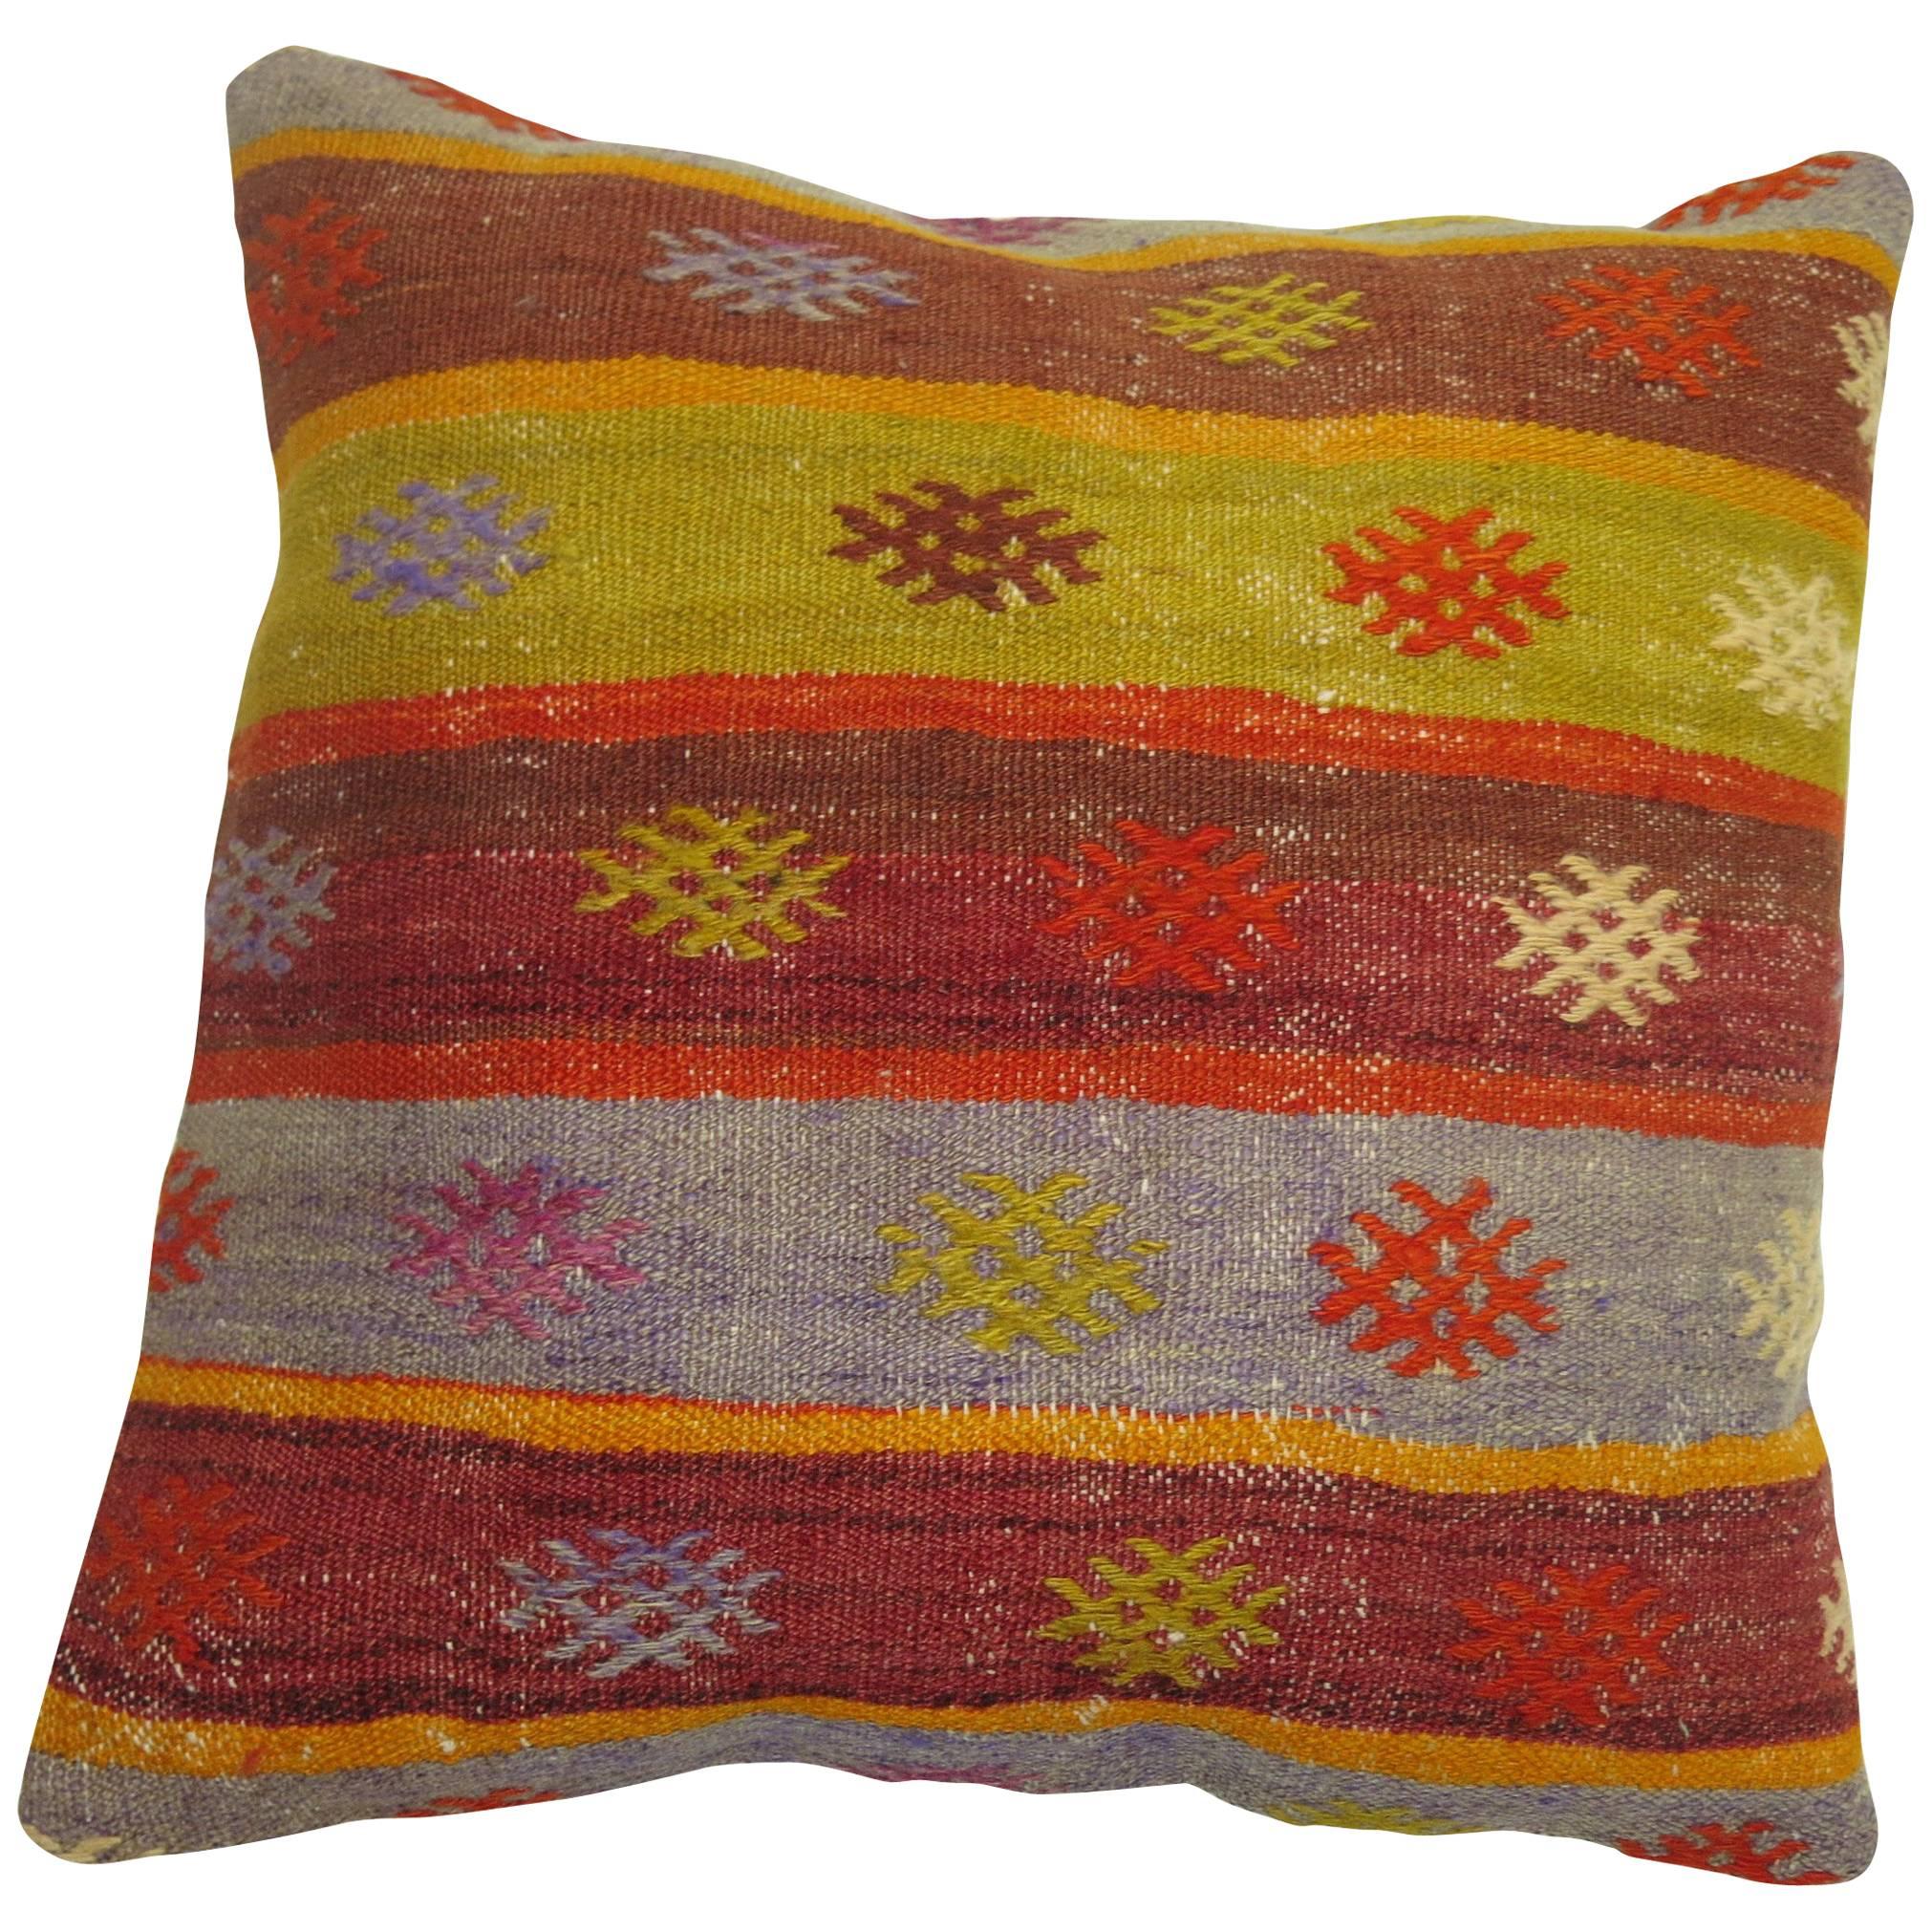 Colorful Vintage Kilim Pillow